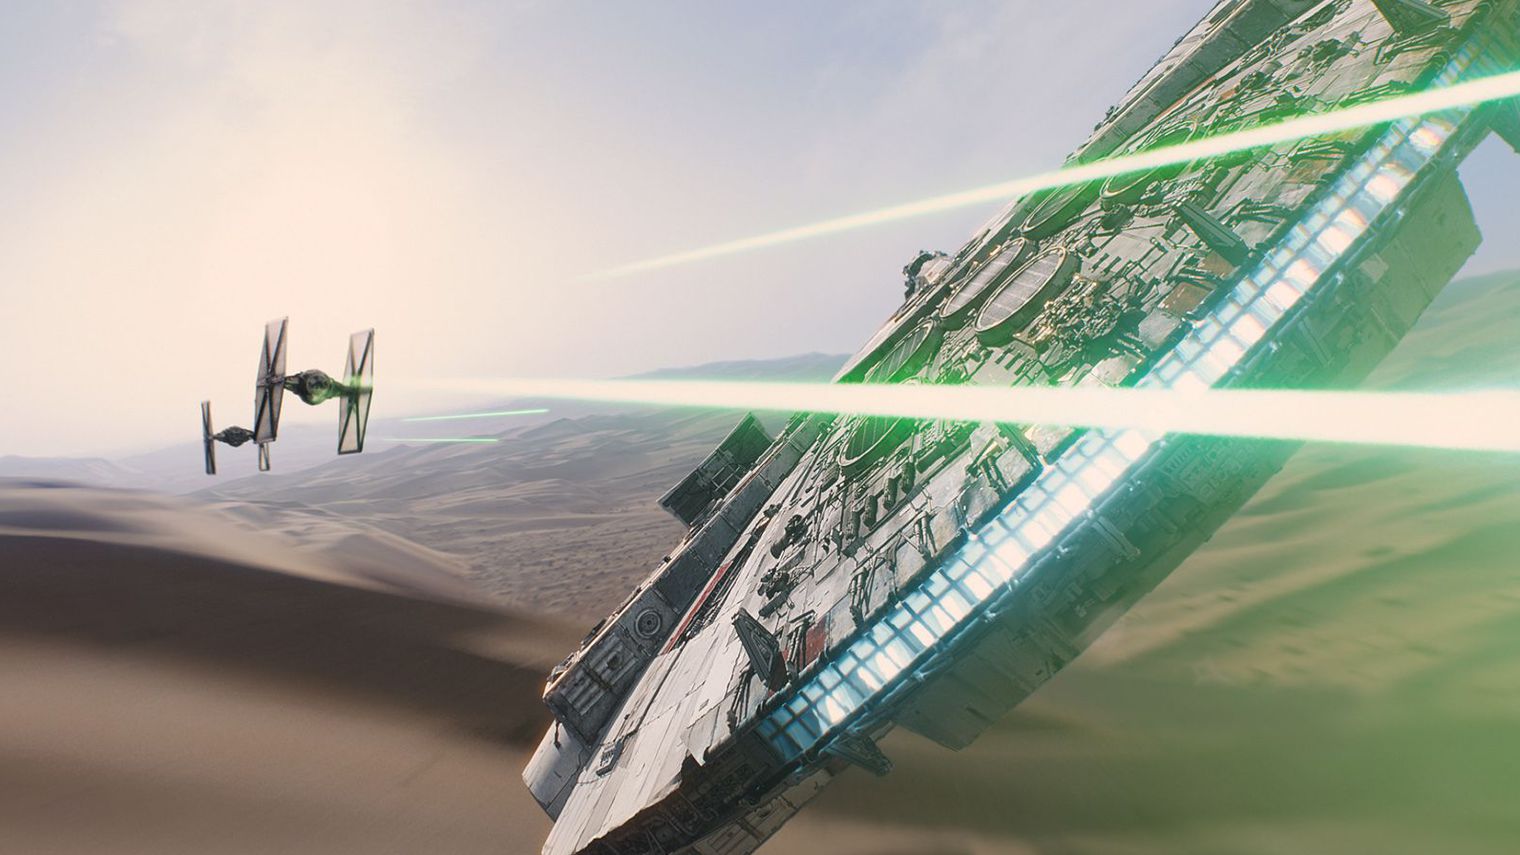 star wars le reveil de la force 1 5476990 Les sorties ciné du 16/12/2015 avec à l'affiche Star Wars - le réveil de la force